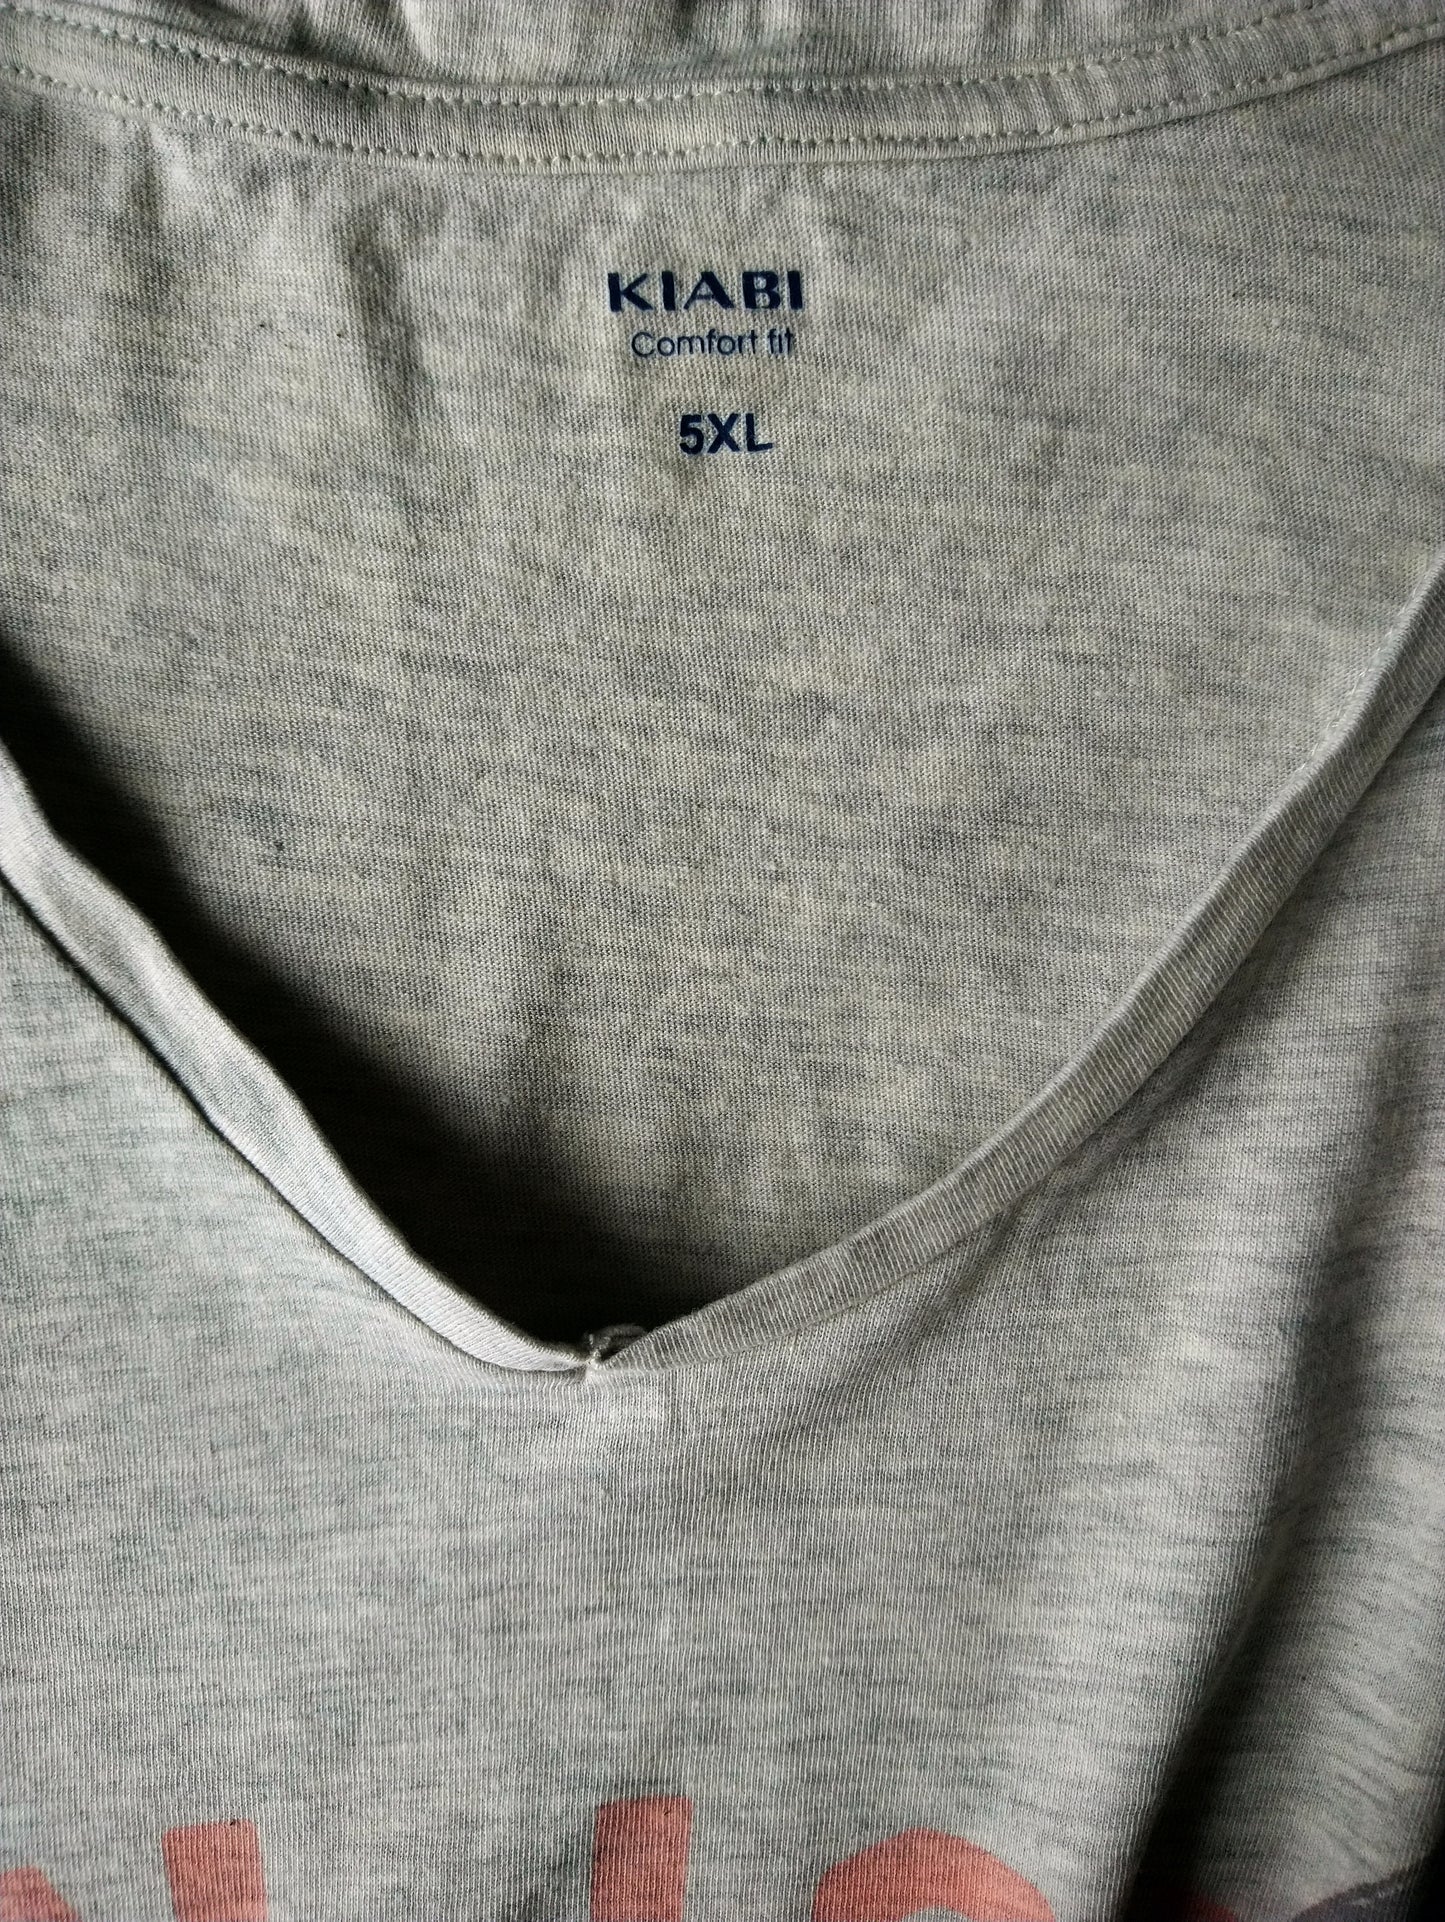 Kiabi-Hemd mit V-Ausschnitt. Beige Grey gemischt mit Druck. Größe 5xl / xxxxxl. Komfort fit.